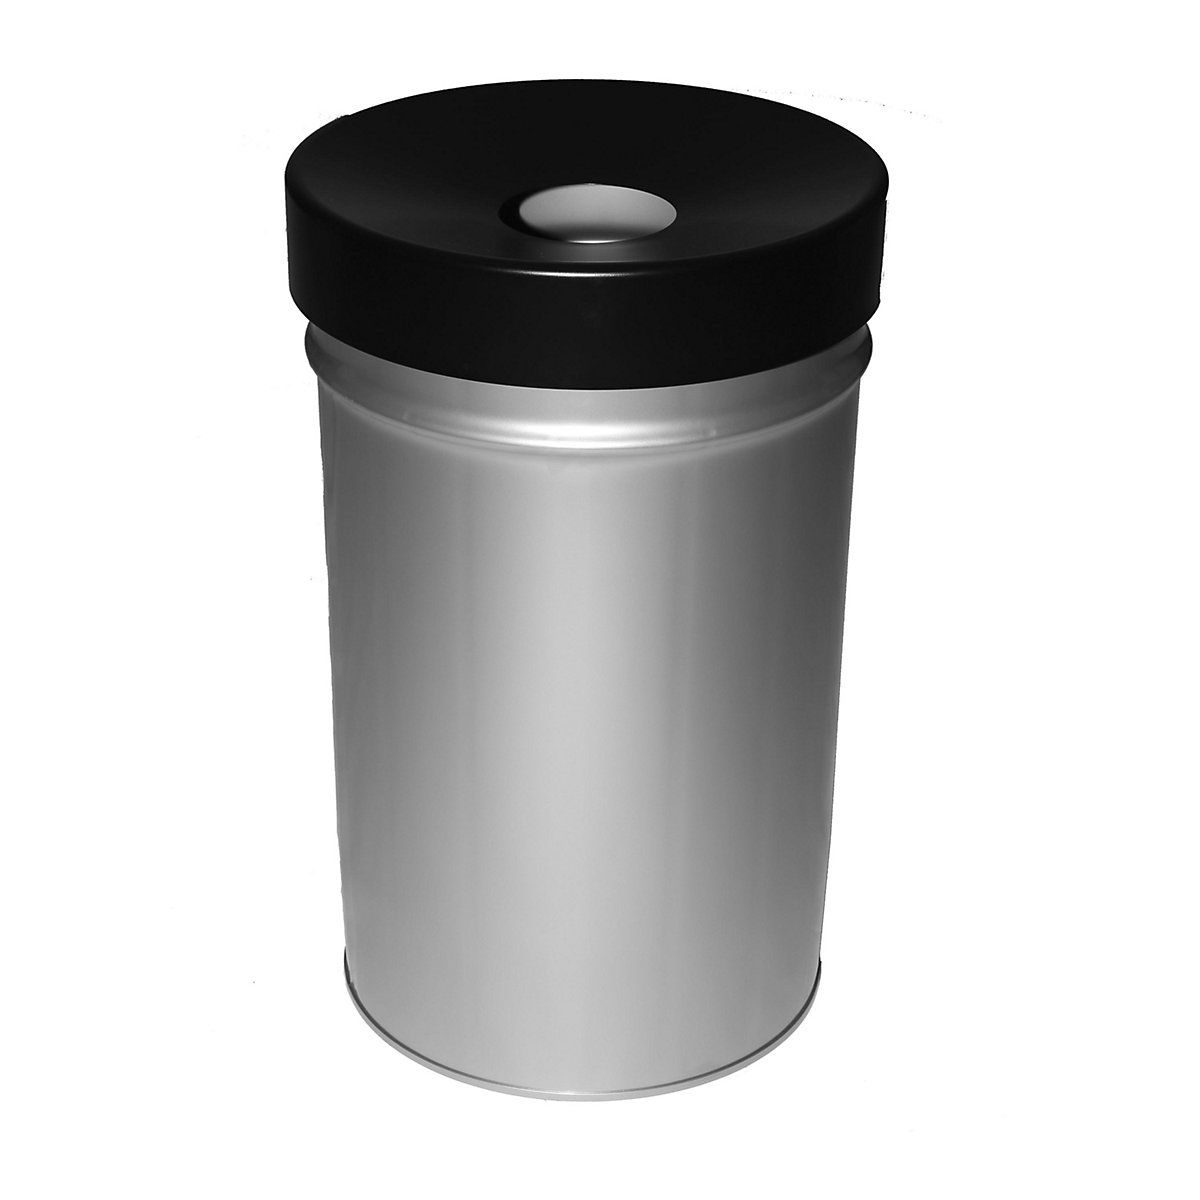 Abfallbehälter, selbstlöschend, Volumen 60 l, HxØ 630 x 392 mm, grau